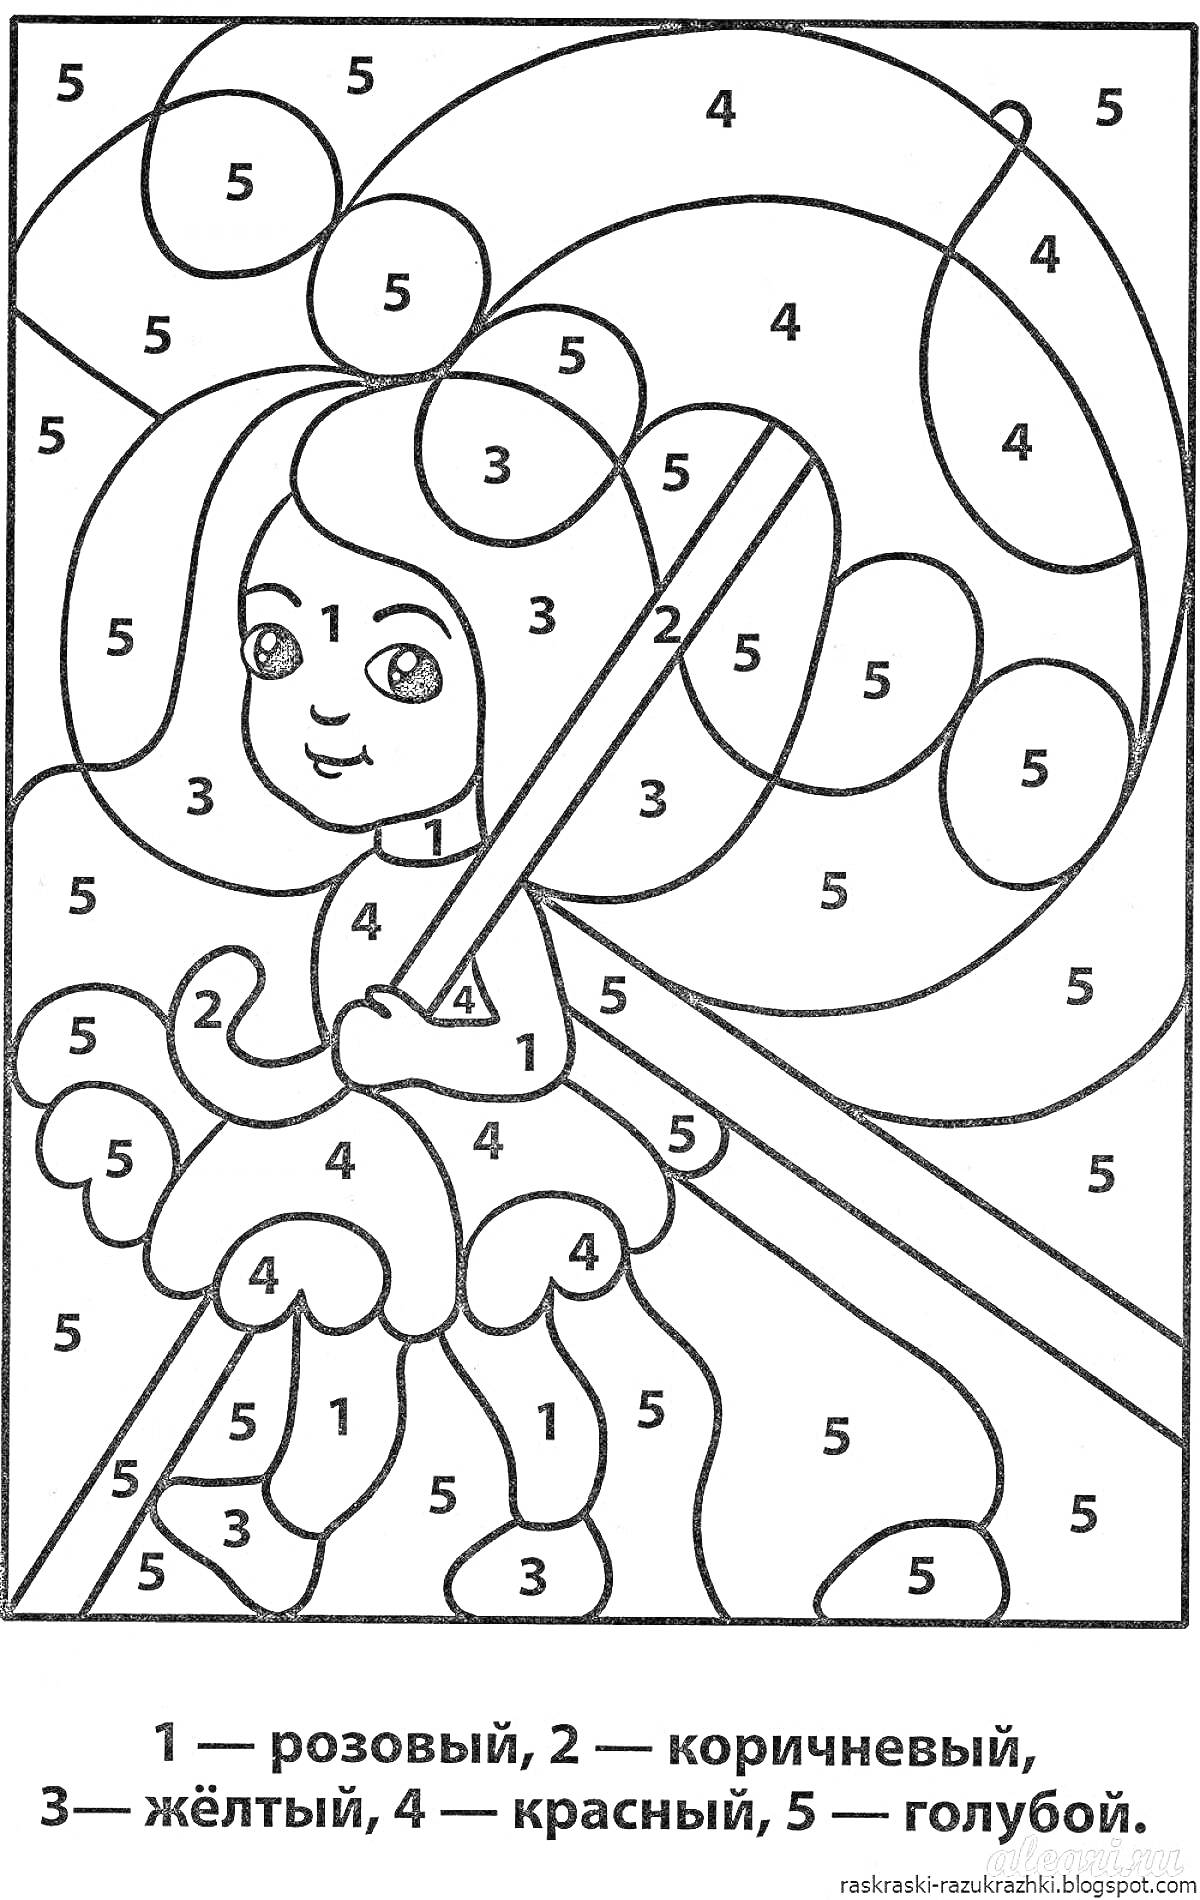 Раскраска Девочка с волшебной палочкой, элементы на фото: девочка, платье, волшебная палочка